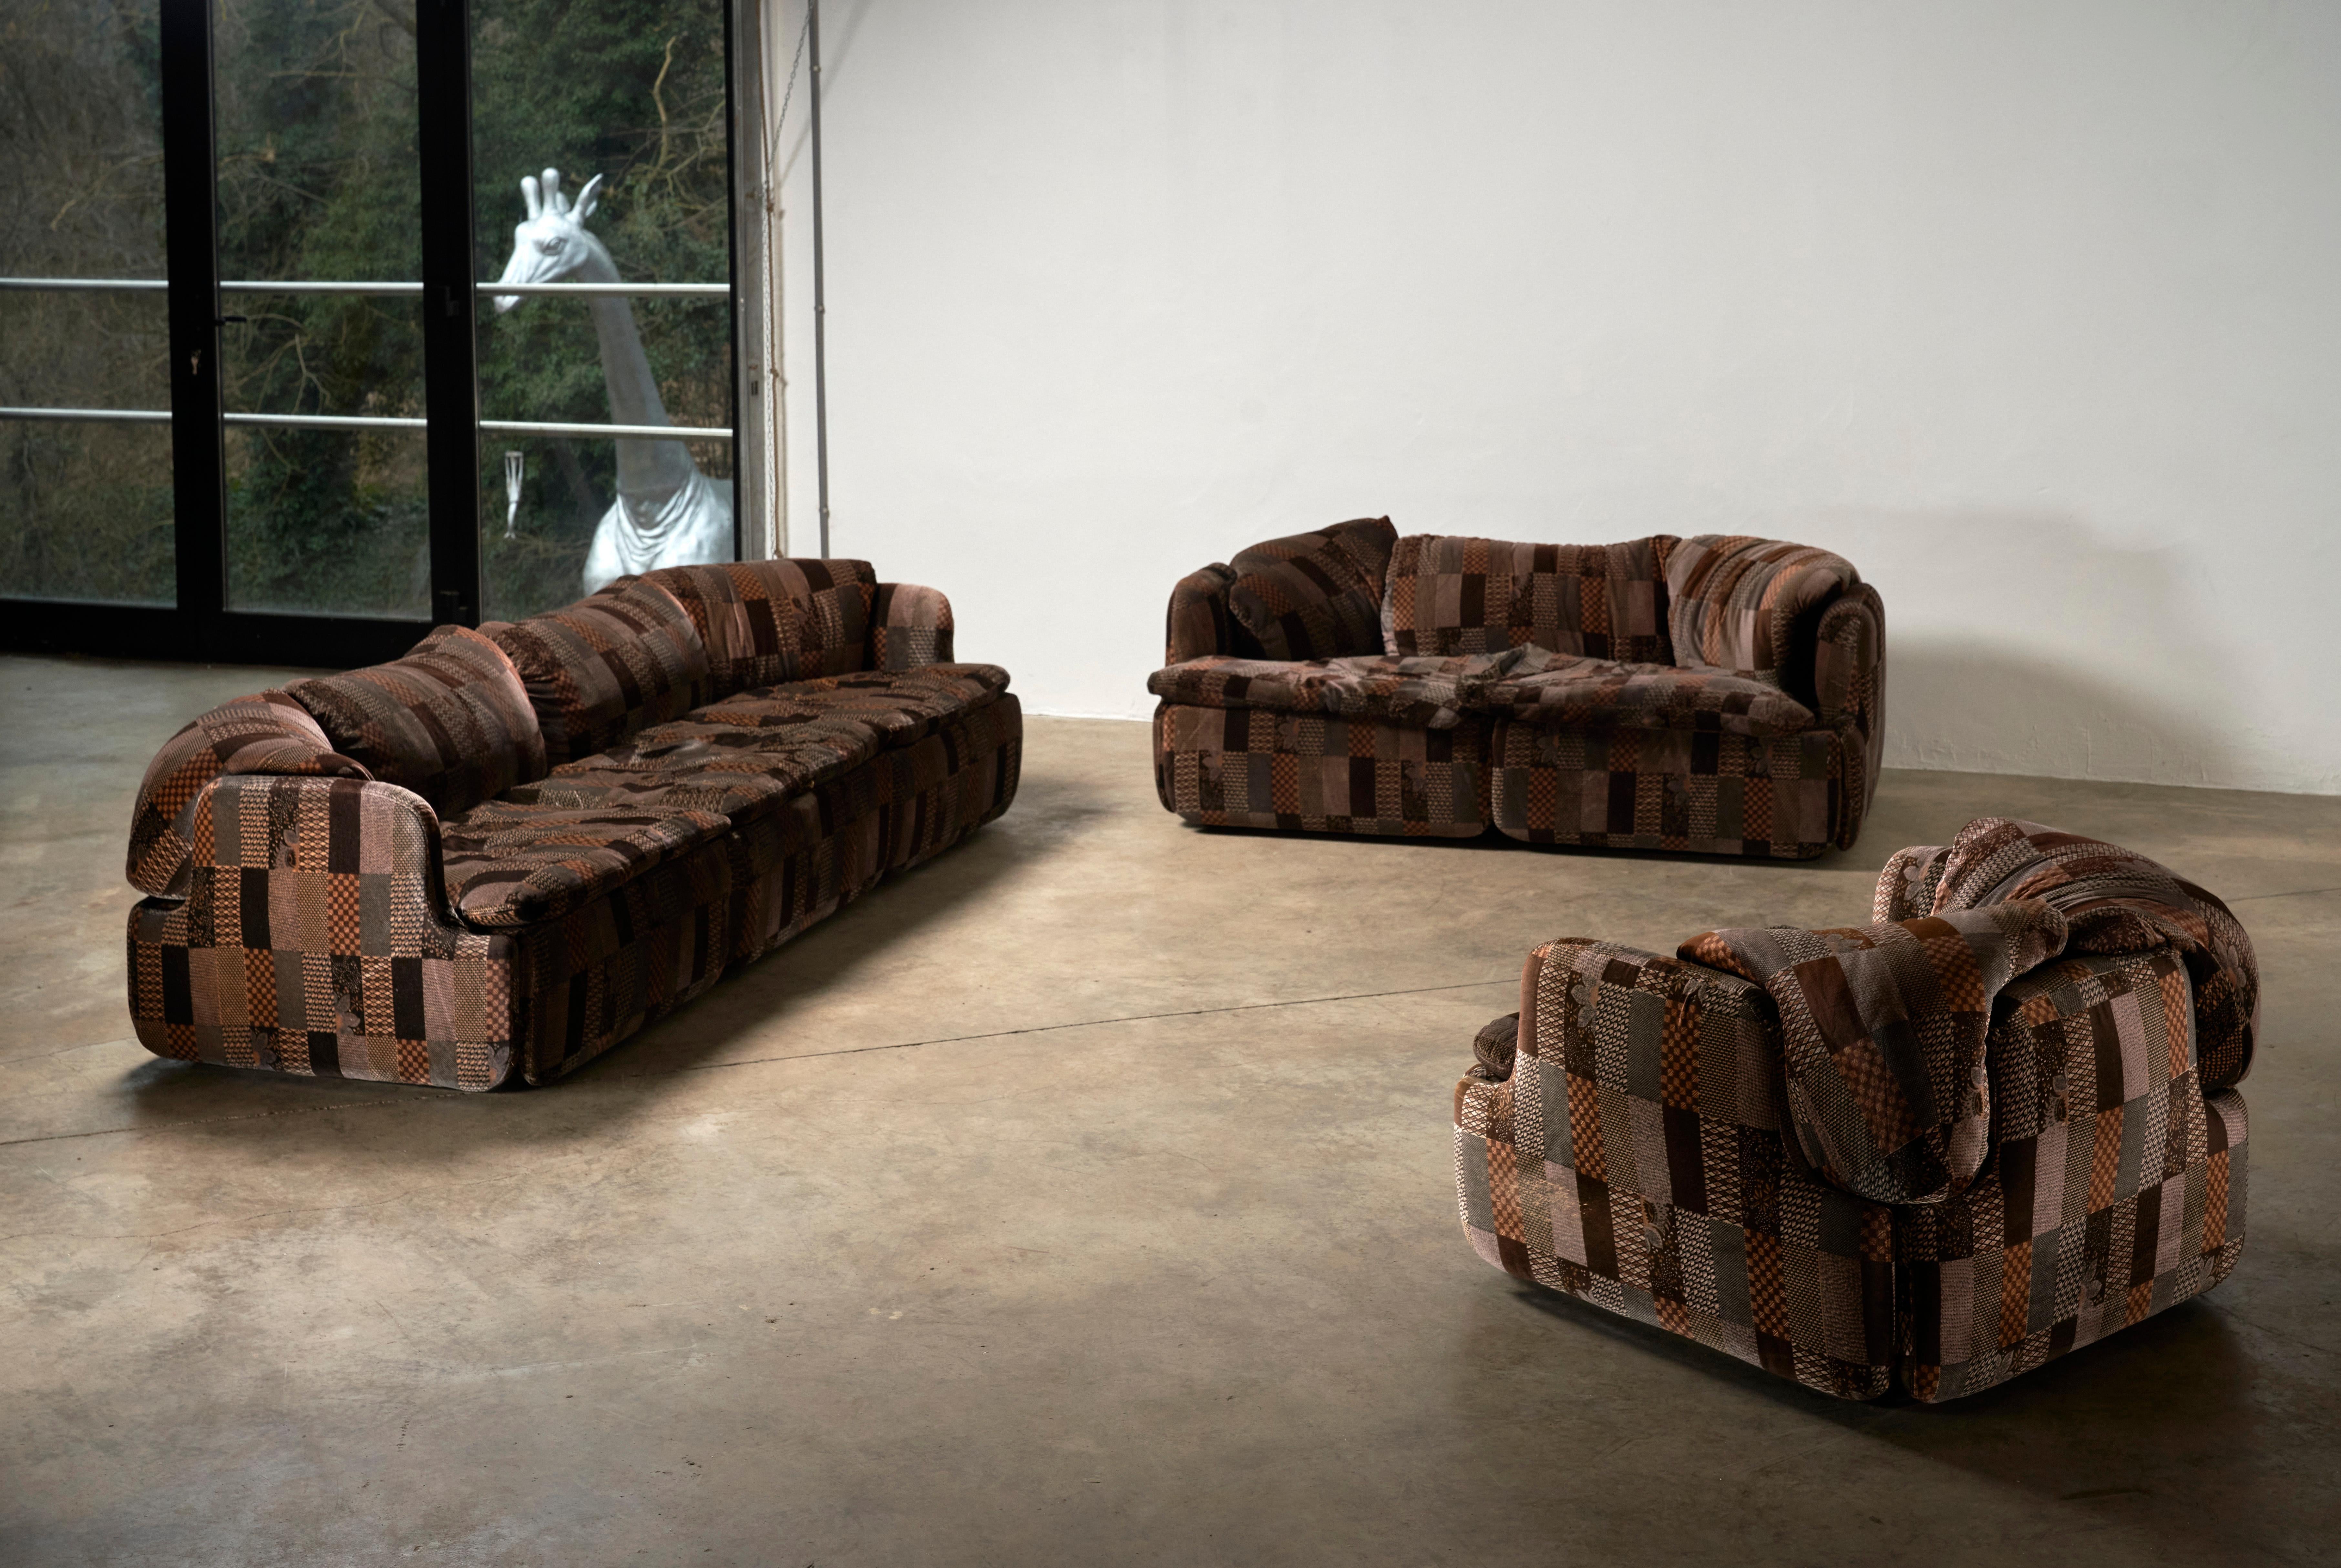 Wir stellen die Alberto Rosselli Saporiti Confidential Sofa Collection vor - ein seltener Fund mit dem kompletten Set, einschließlich des 3-Sitzers, 2-Sitzers und 1-Sitzers. Dieses exklusive Ensemble zeichnet sich durch ein einzigartiges und